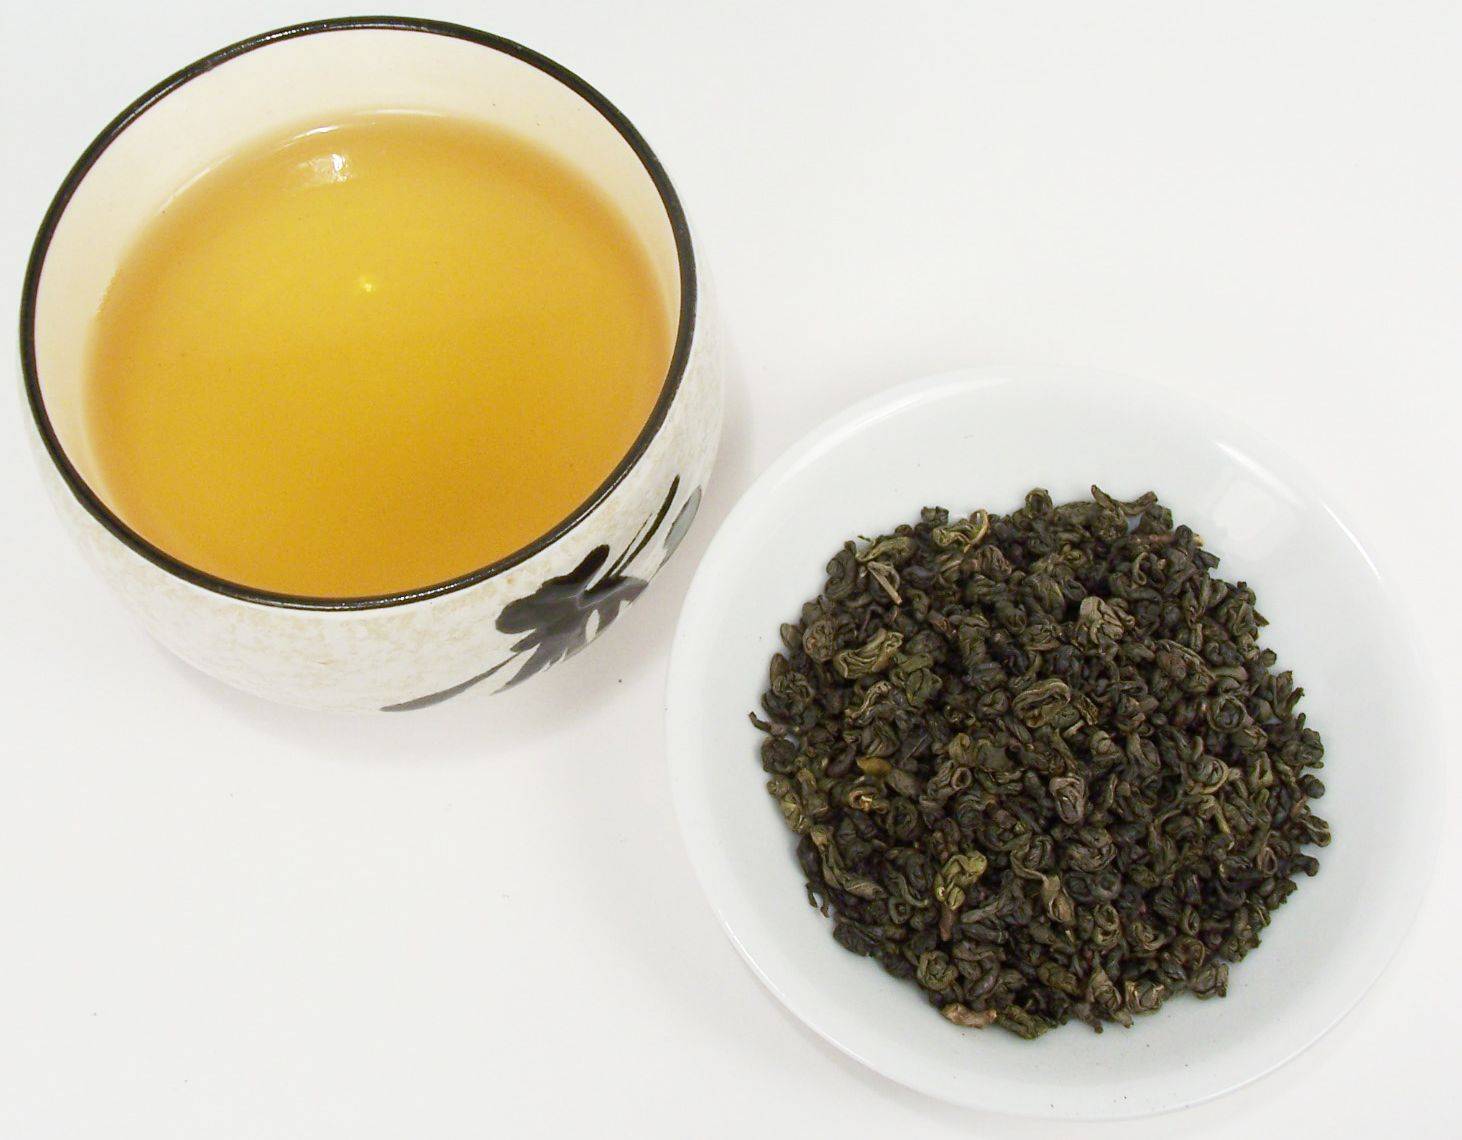 Зеленый чай «ганпаудер» или чайные традиции китая у вас дома